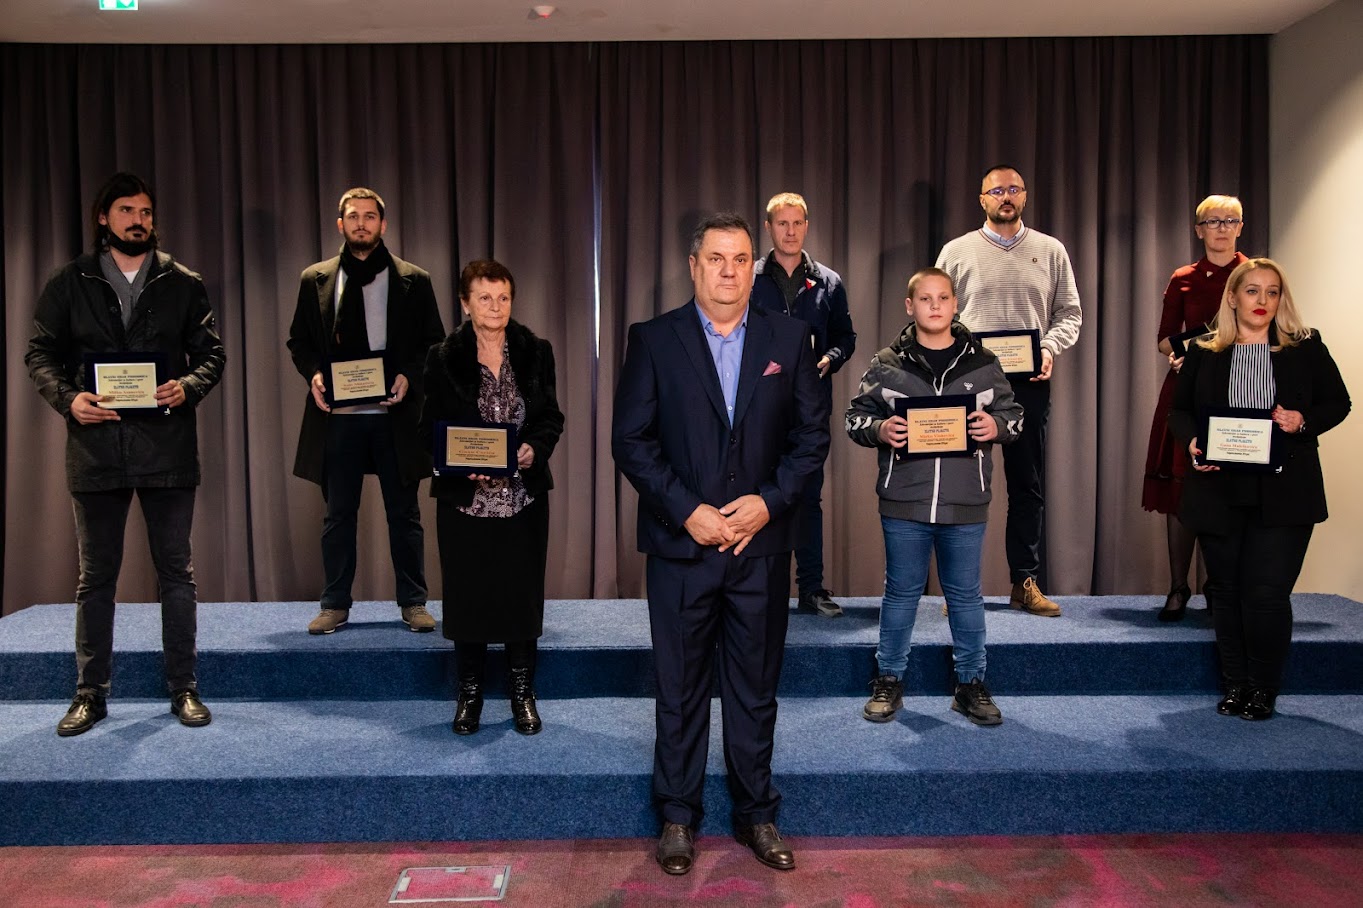 Nagrađeni najbolji sportisti Podgorice u 2021. godini; Vuković: Glavni grad nastavlja da unapređuje uslove za najbolje ambasadore našeg grada